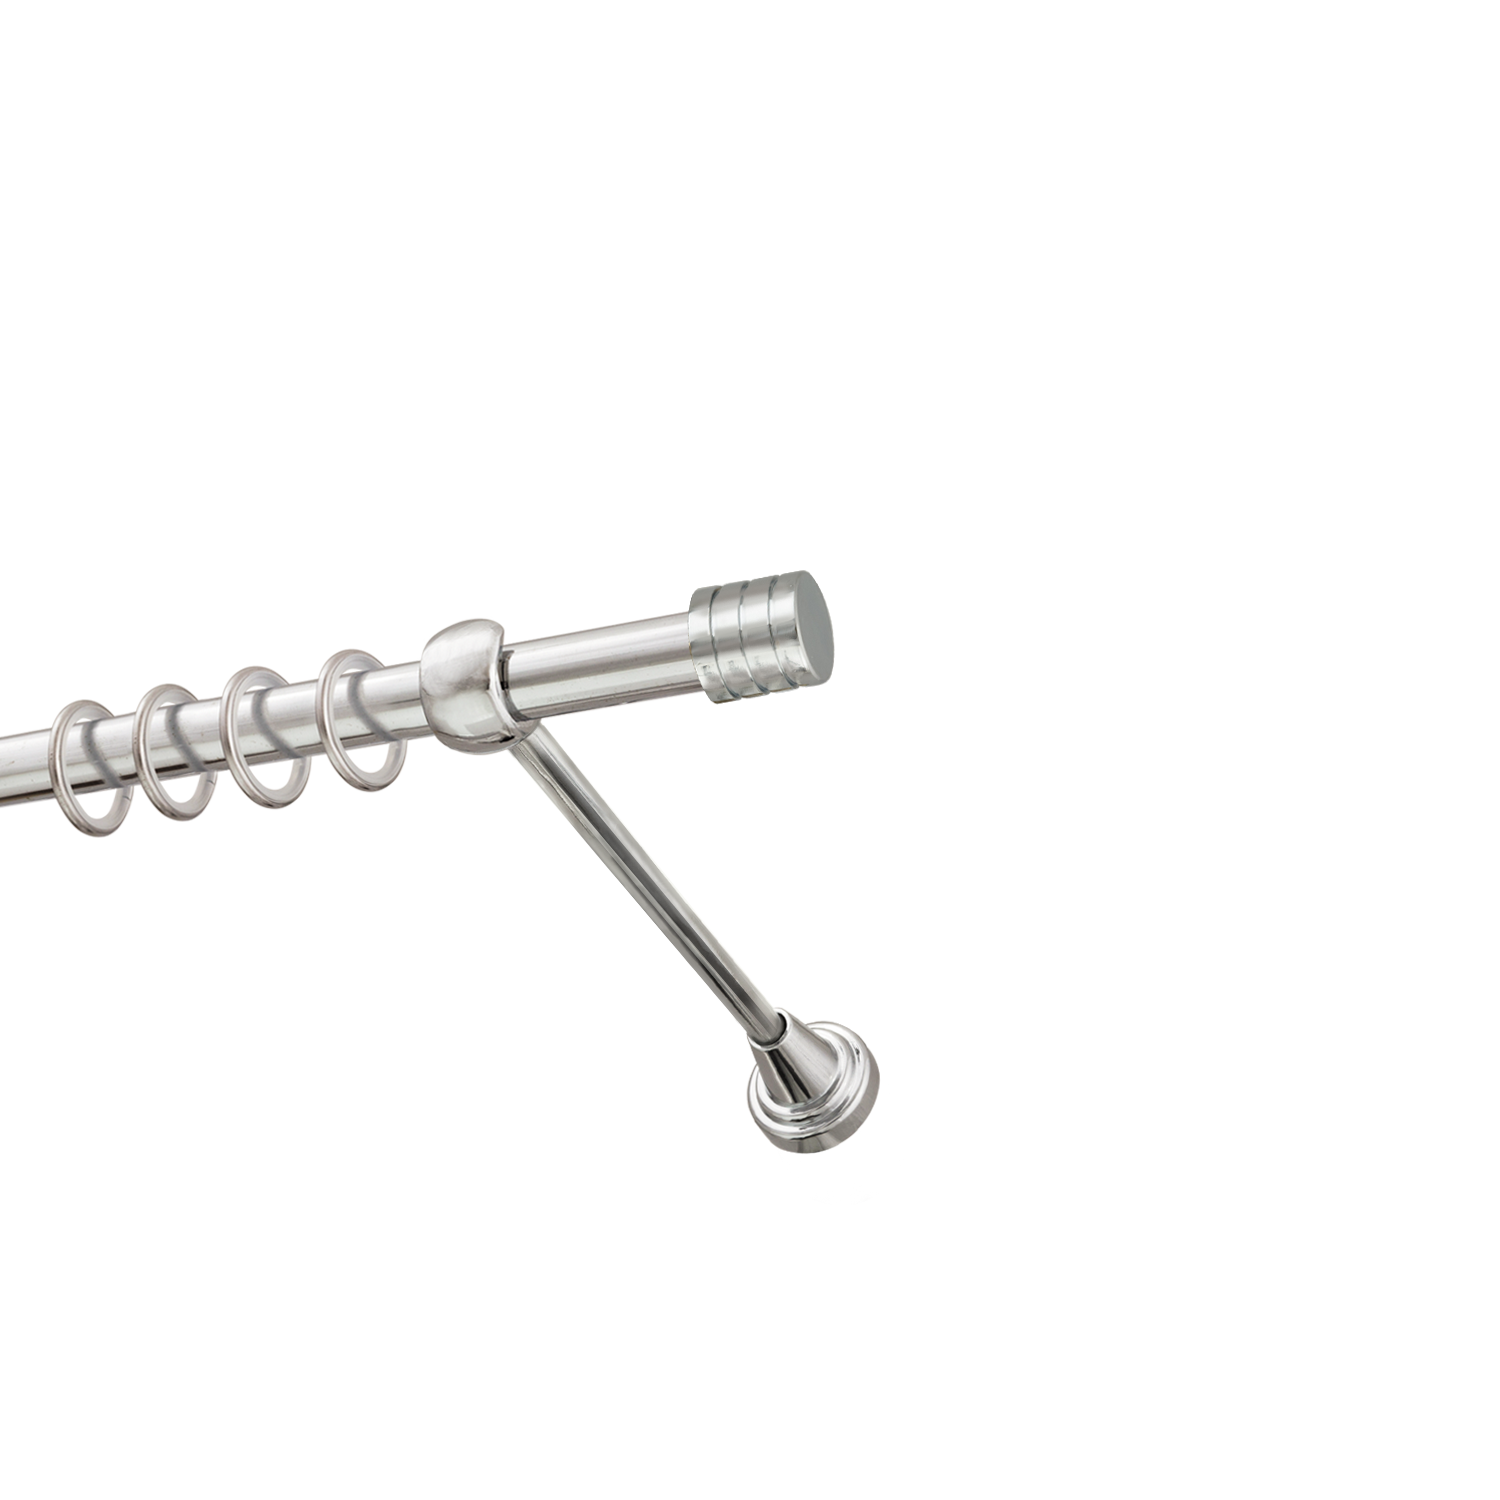 Металлический карниз для штор Подиум, однорядный 16 мм, серебро, гладкая штанга, длина 300 см - фото Wikidecor.ru